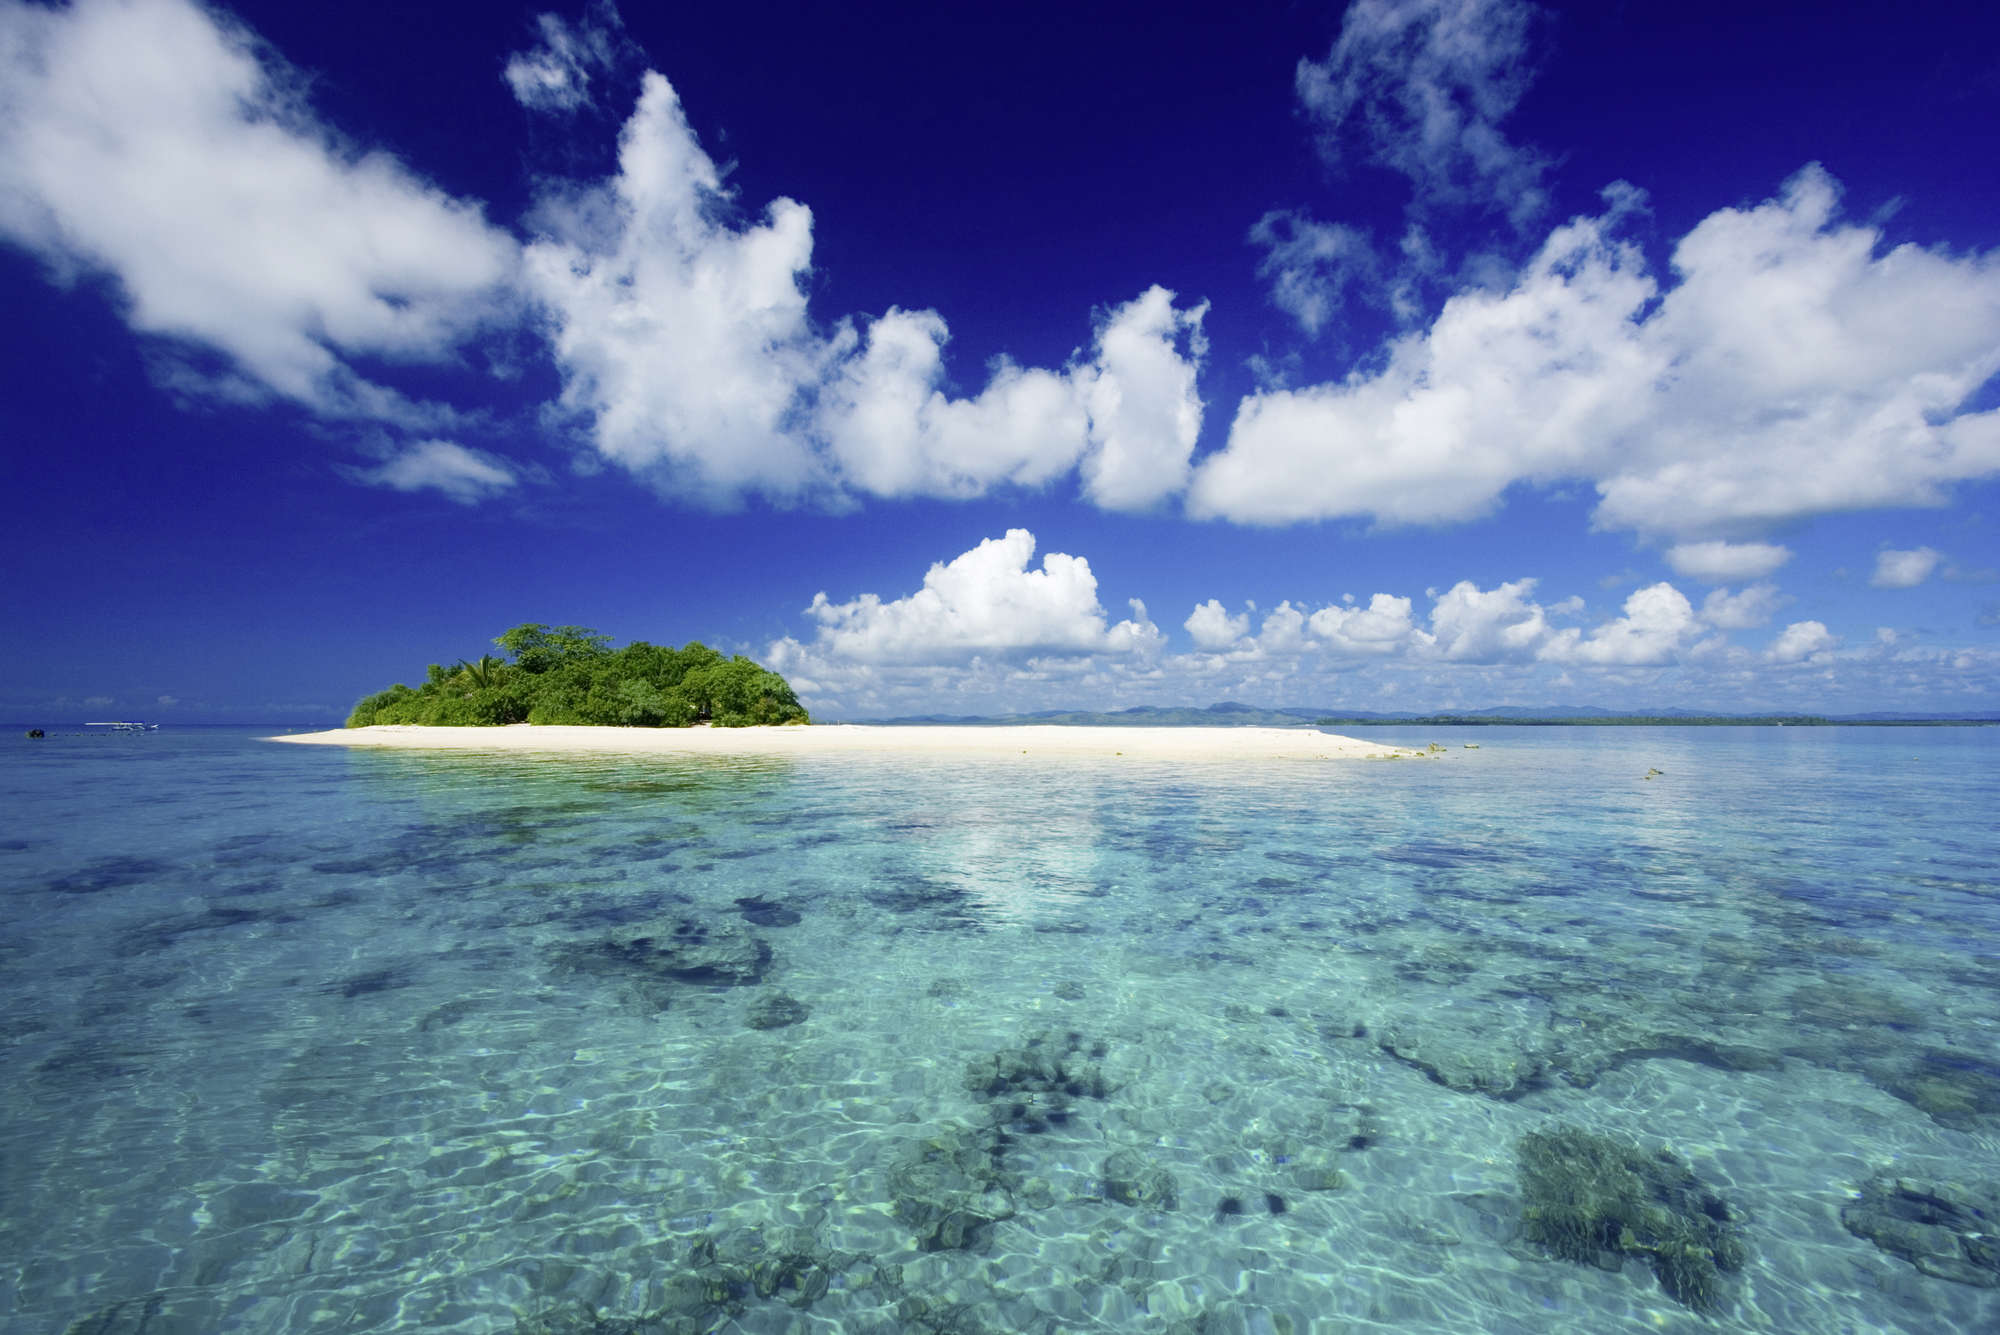             Papel pintado South Seas Island and Sky - tejido no tejido liso de primera calidad
        